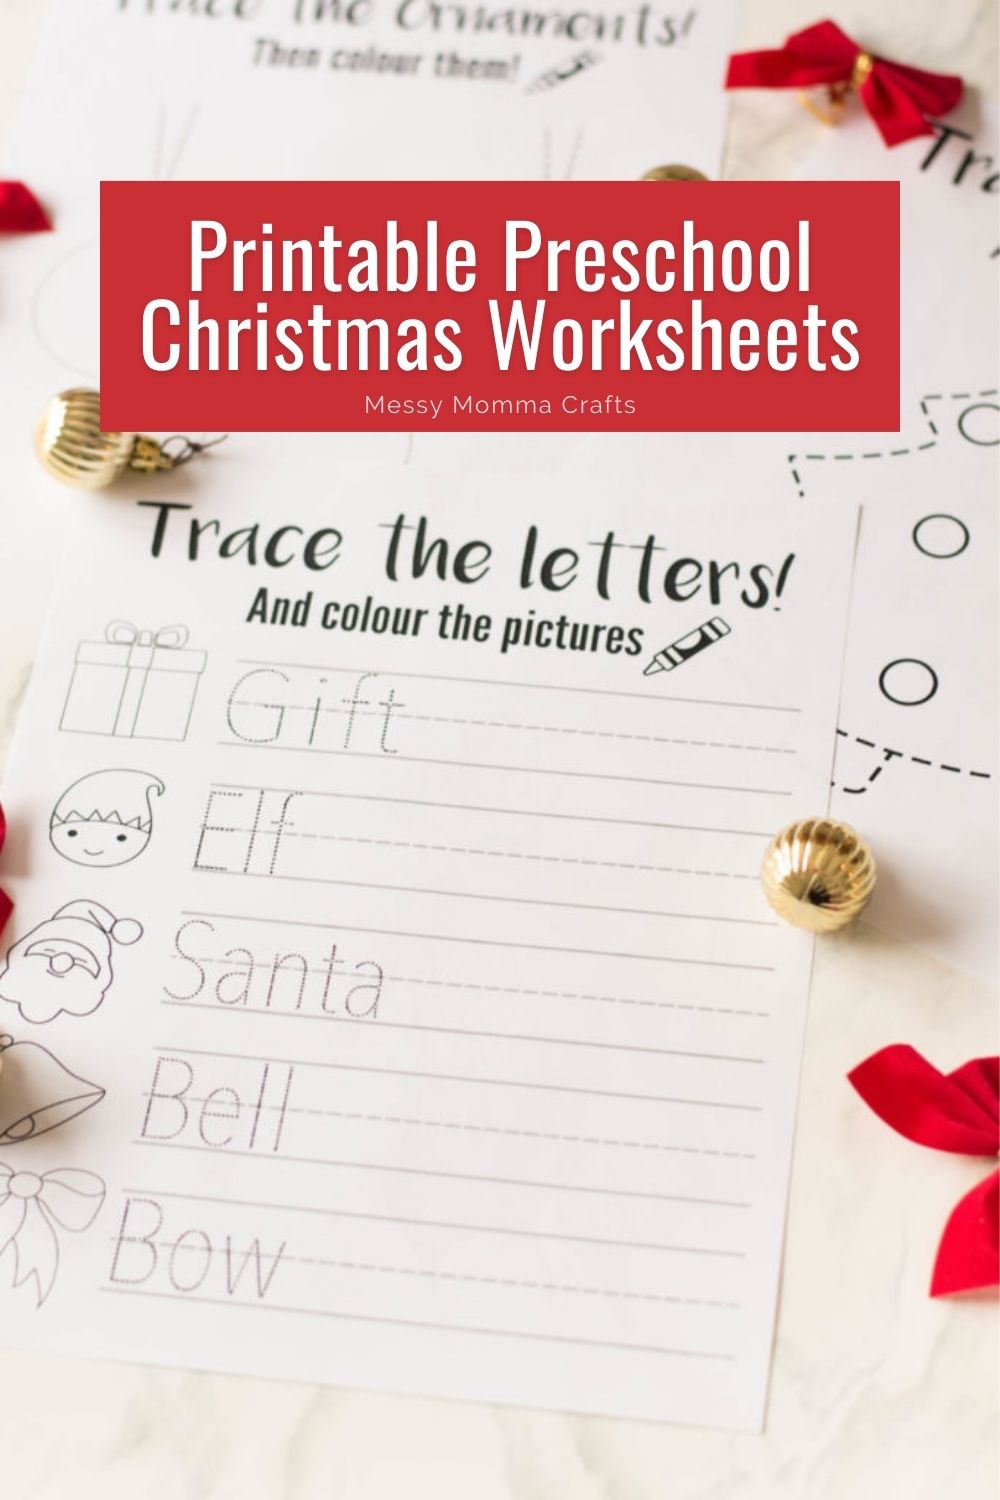 Printable preschool Christmas worksheets.